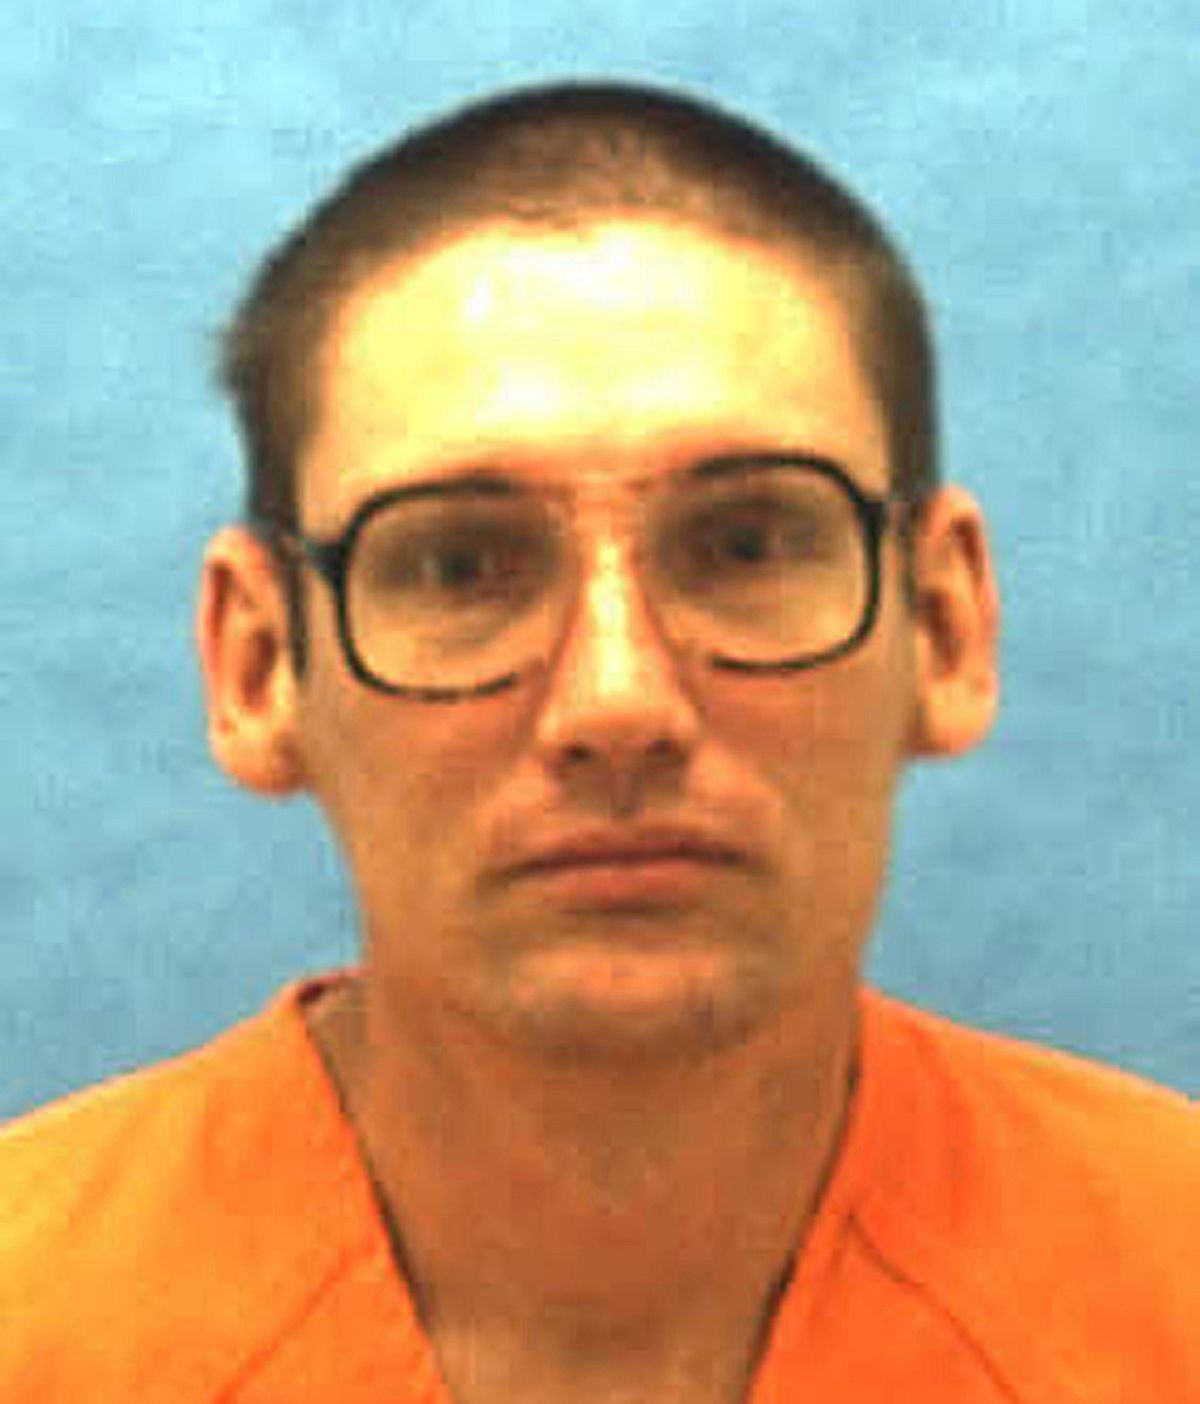 Florida ejecuta a un hombre condenado por violar y asesinar a una niña de 11 años